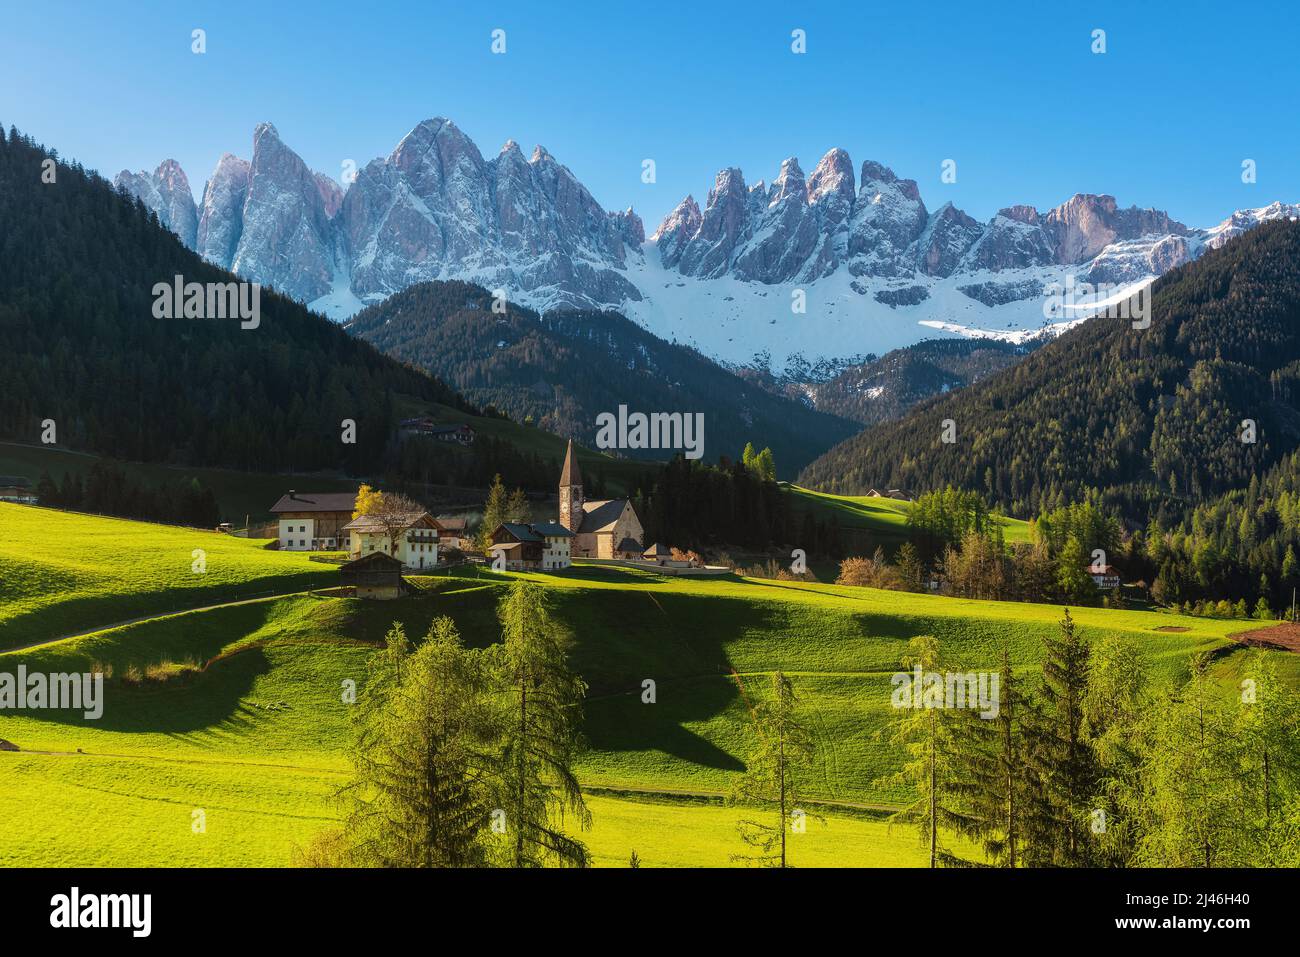 Sonnige Frühlingslandschaft der Dolomiten Alpen. Berühmtes Dorf von Santa Maddalena mit Kirche und wunderschönen Dolomiten, Val di Funes, Dolomiten, Italien Stockfoto